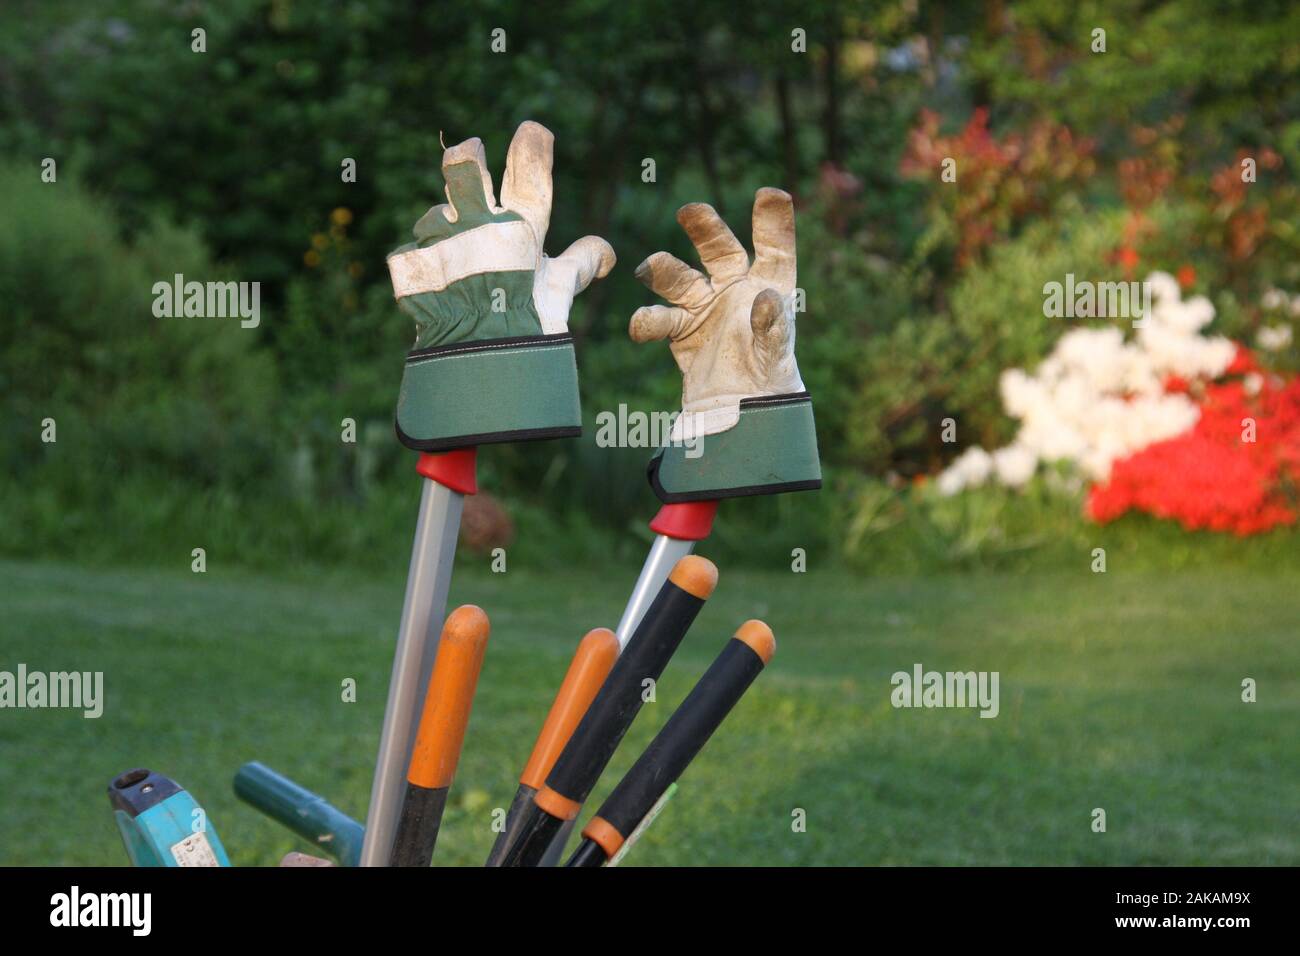 Gartenhandschuhe für Werkzeuge in der Abendsonne, atmosphärisch dicht, Konzept garten Helfer gerne mal in den Garten Hobbygärtner, nach der Arbeit Stockfoto